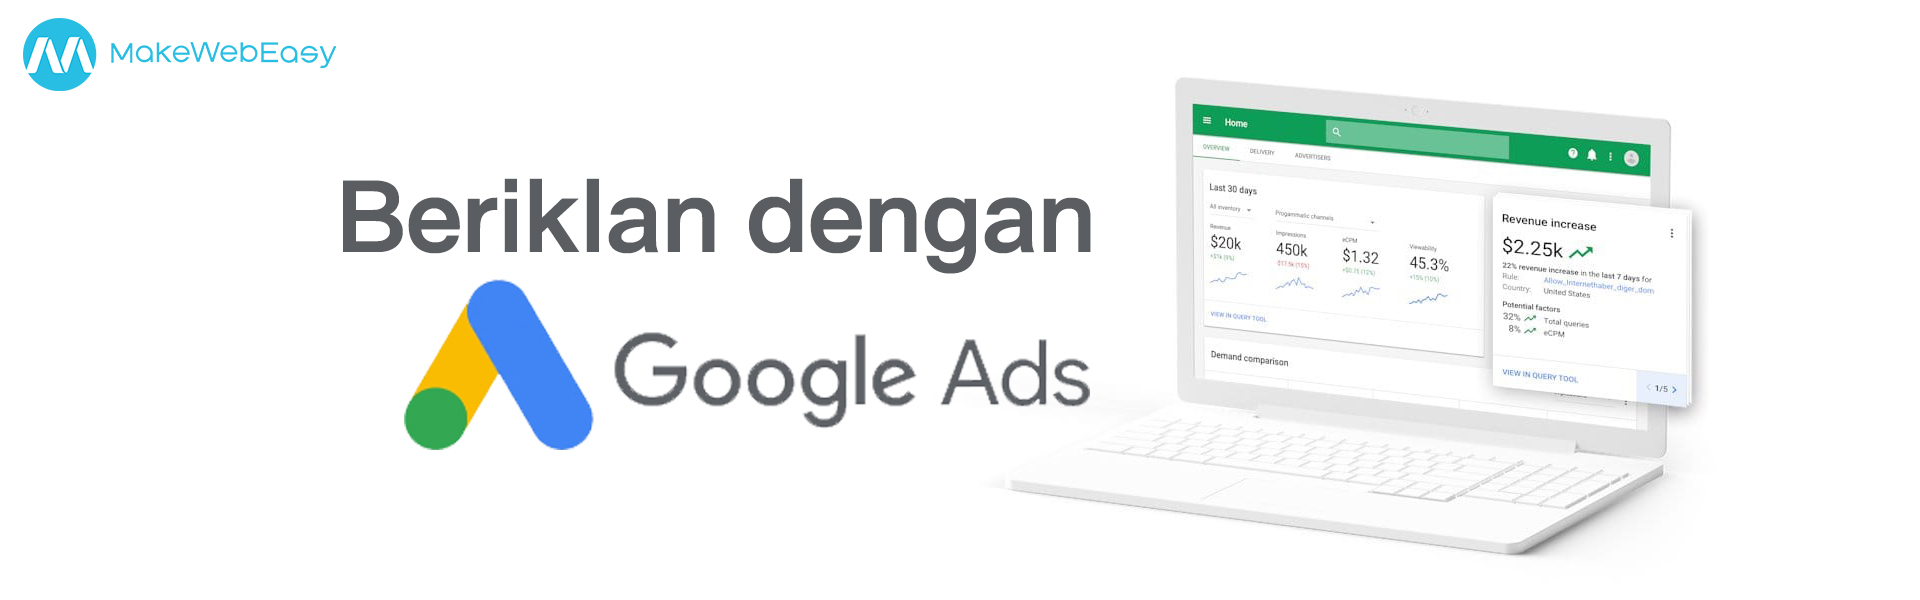 Beriklan dengan Google Ads_MakeWebEasy Indonesia_Jasa Pembuatan Website